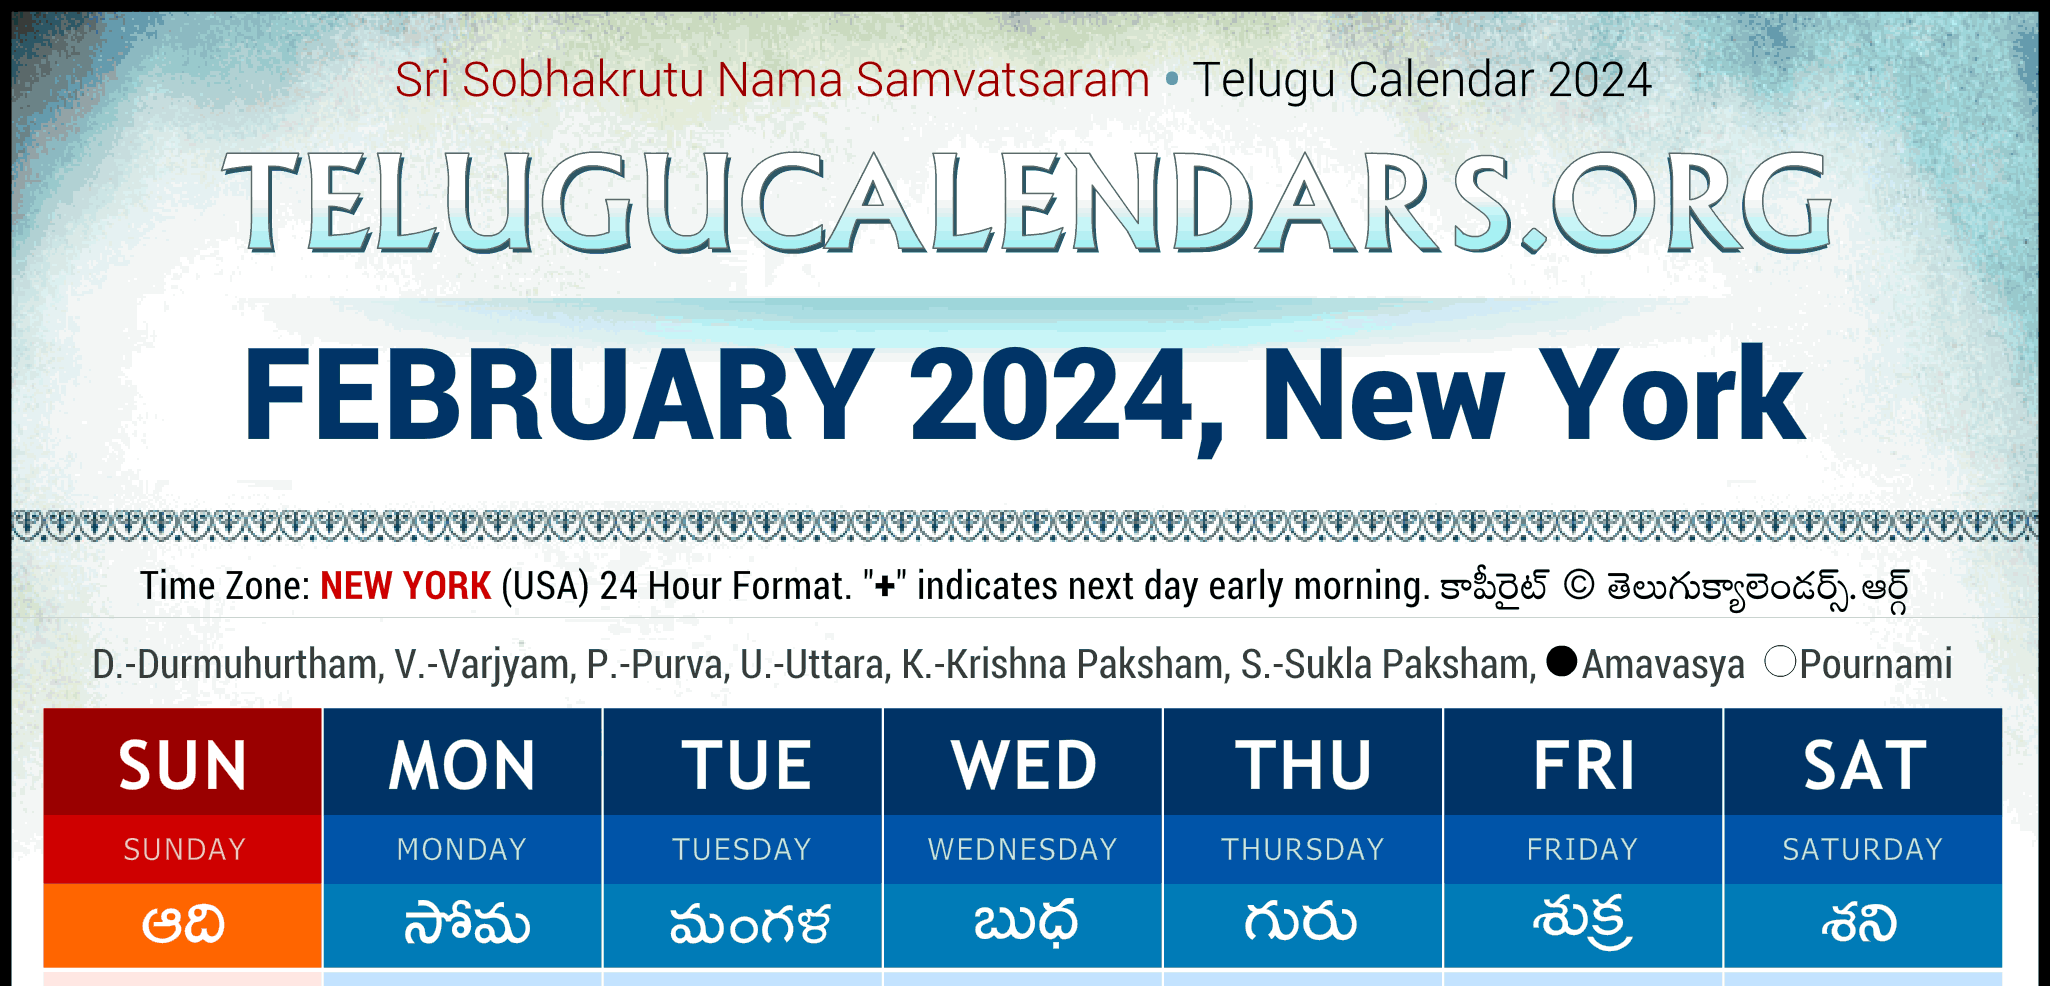 Telugu Calendar 2024 New York